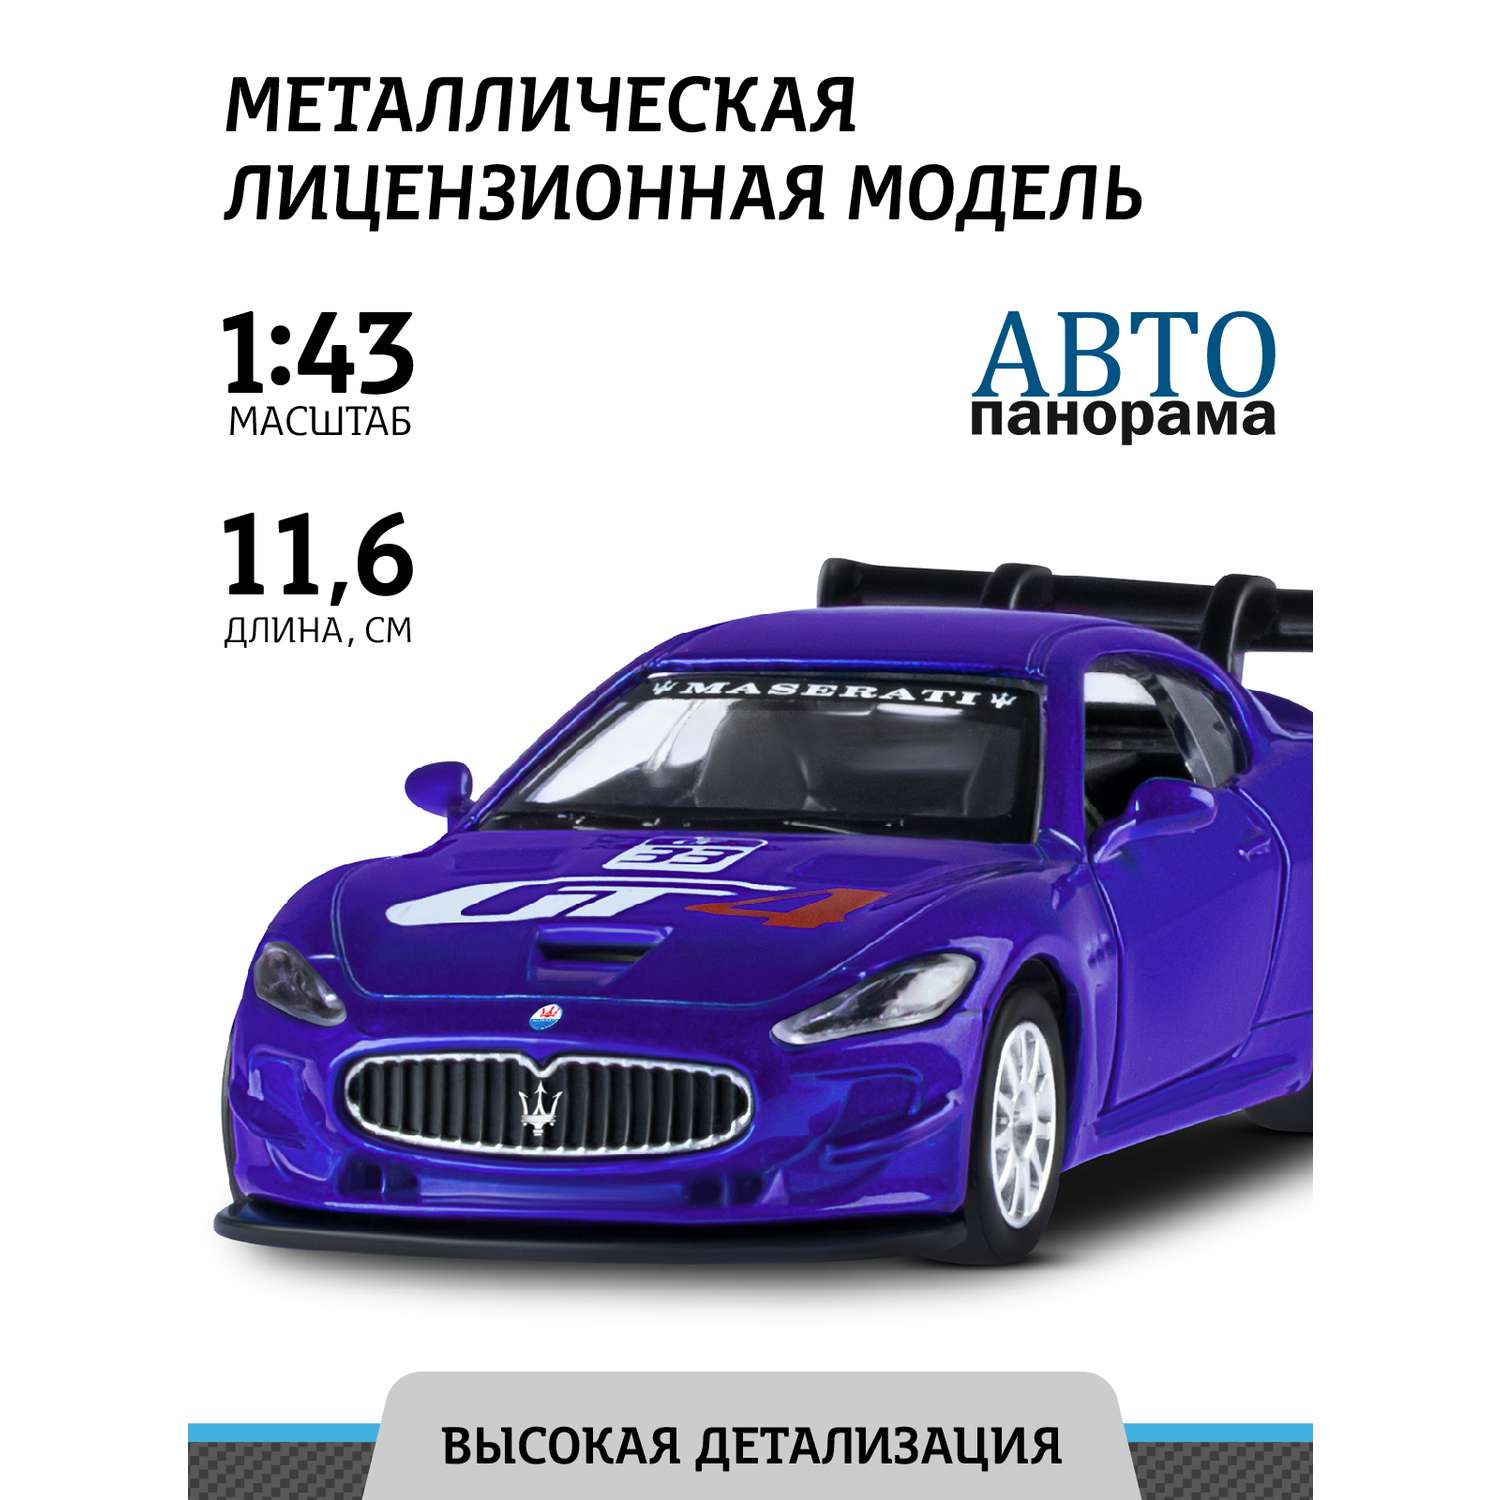 Машинка металлическая АВТОпанорама игрушка детская 1:43 Maserati Gran Turismo MC GT4 синий инерционная JB1200178 - фото 1